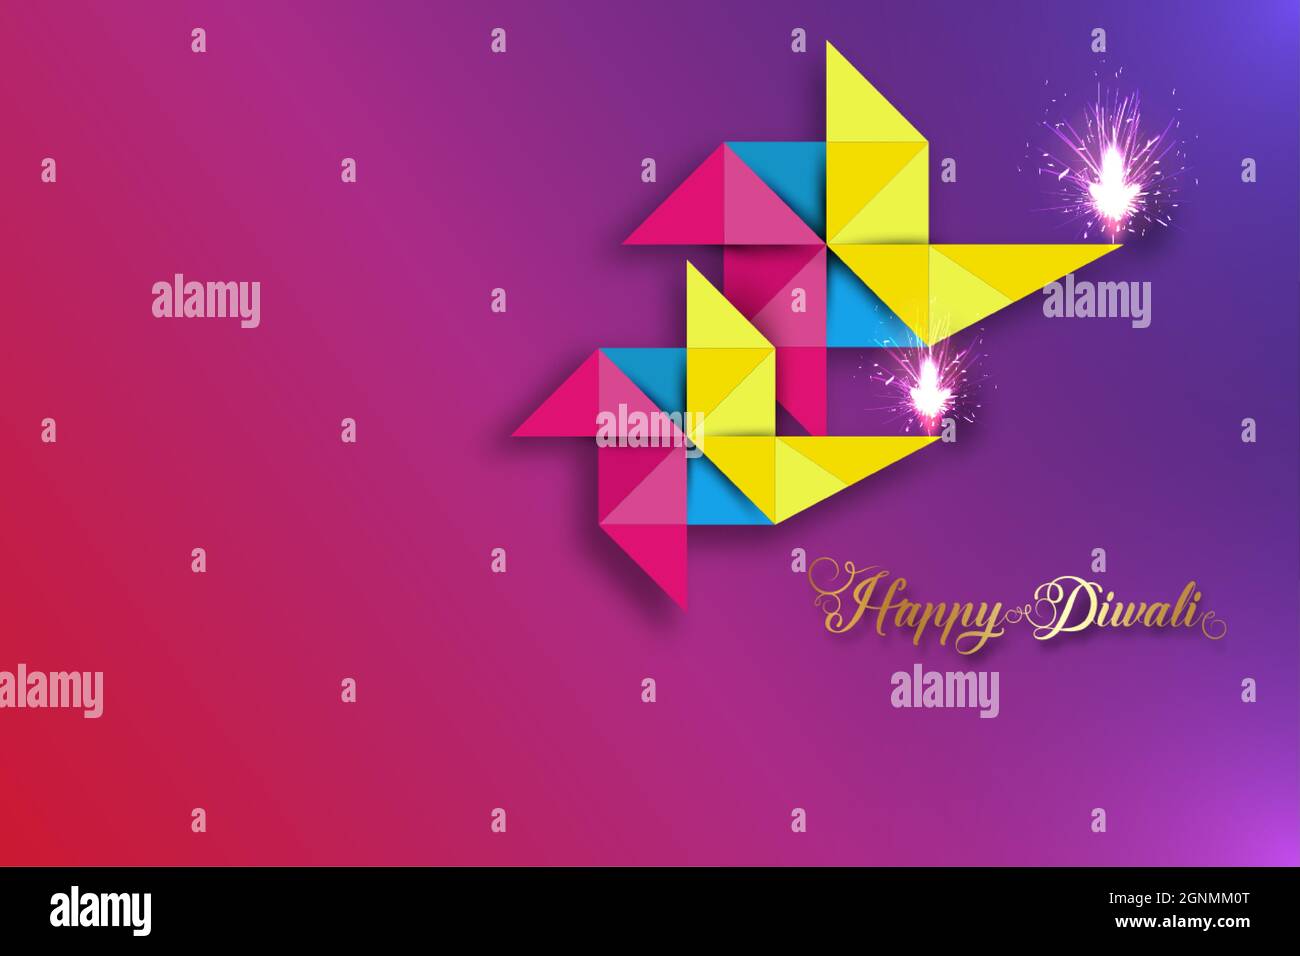 Happy Diwali Festival of Lights Feier Bunte Vorlage aus Origami-Papier Grafikdesign von indischen Diya-Öllampen, modernes Flat Design-Banner Stock Vektor